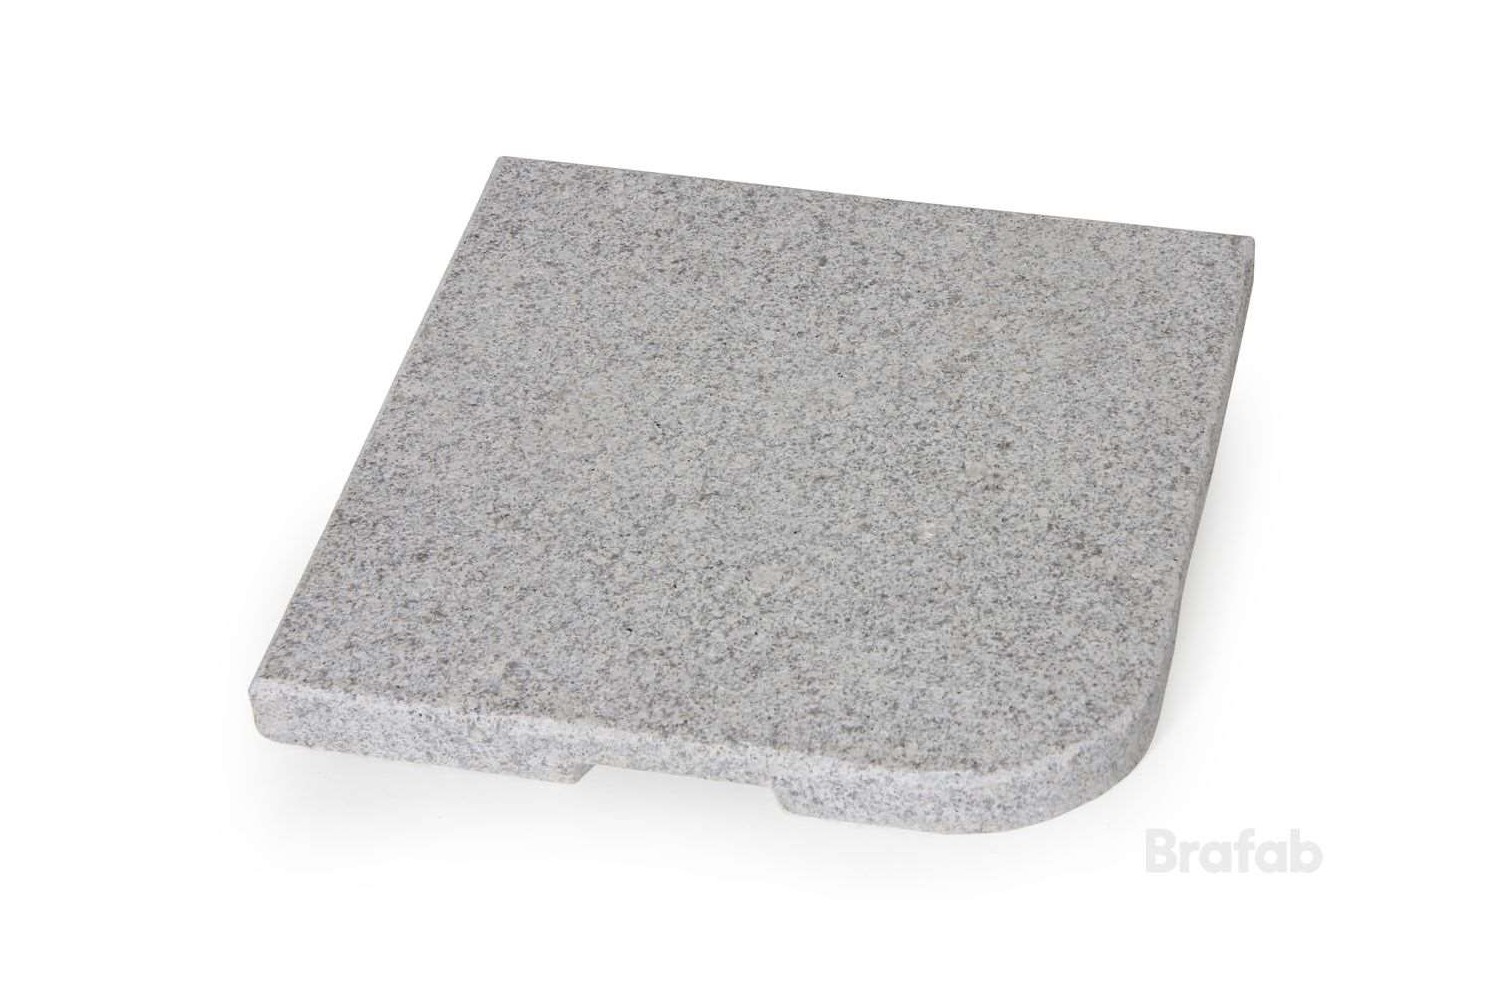 Abetone parasollfotsvikt granit 48x48 25 kg Brafab